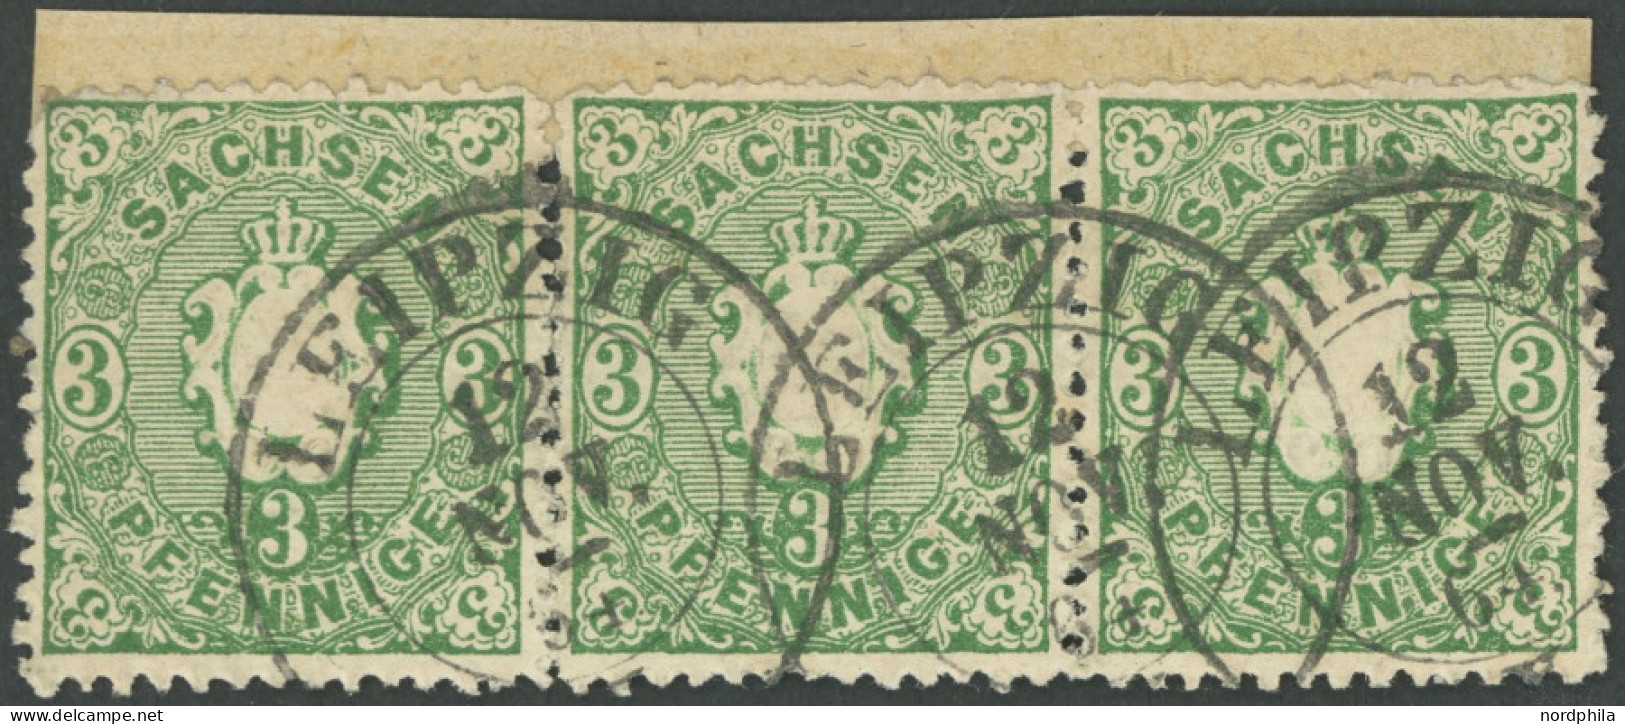 SACHSEN 14a O, 1863, 3 Pf. Grün Im Waagerechten Dreierstreifen, Linke Marke Kleine Fehler, Feinst, Kurzbefund Vaatz - Sachsen